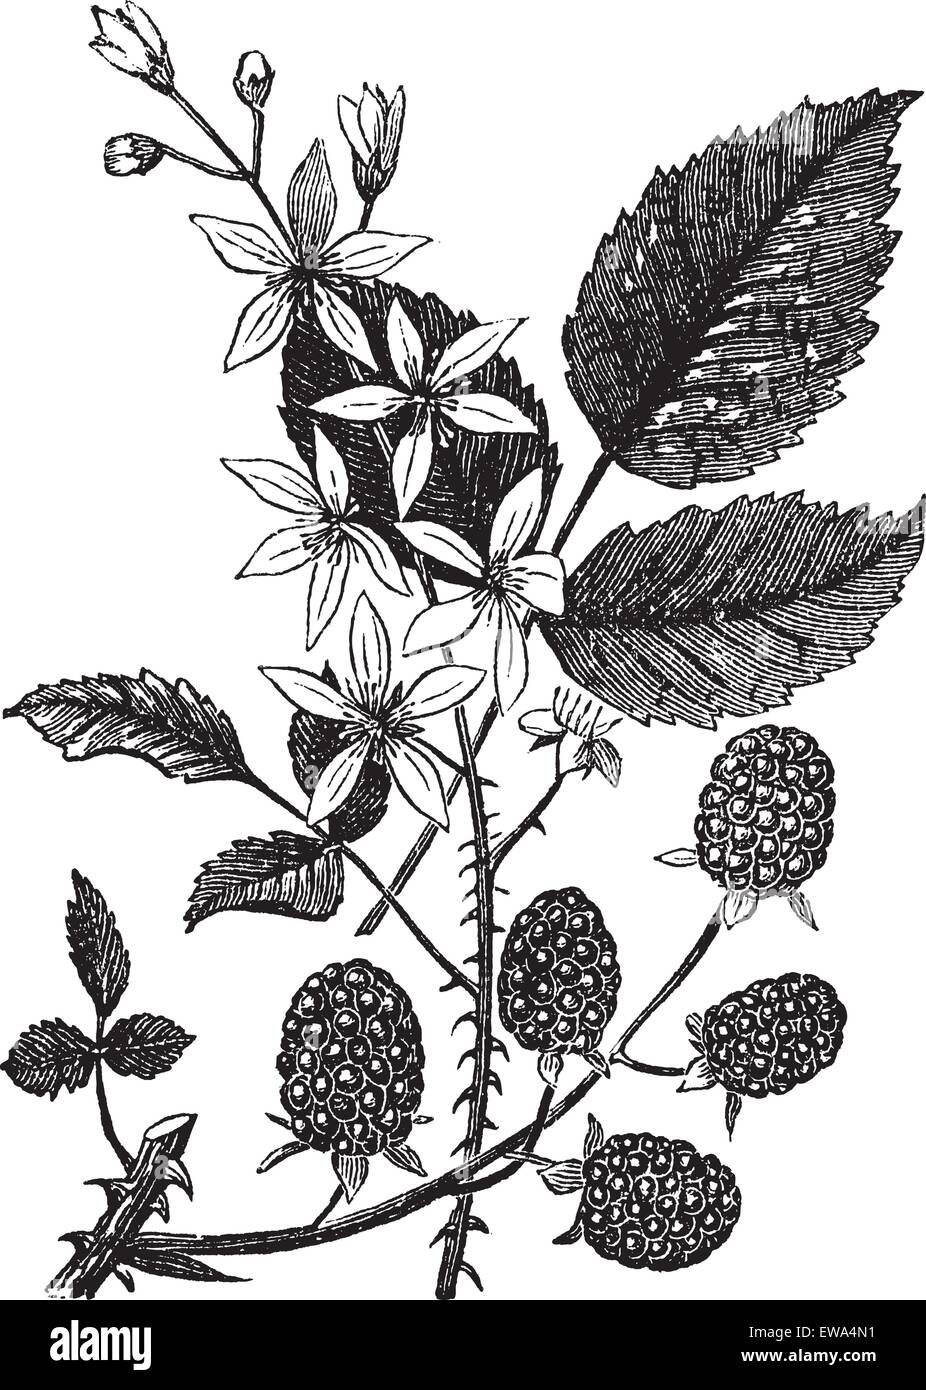 BlackBerry oder Rubus Villosus oder Bramble, Vintage Gravur. Alten gravierten Abbildung von Blackberry isoliert auf einem weißen Hintergrund. Stock Vektor